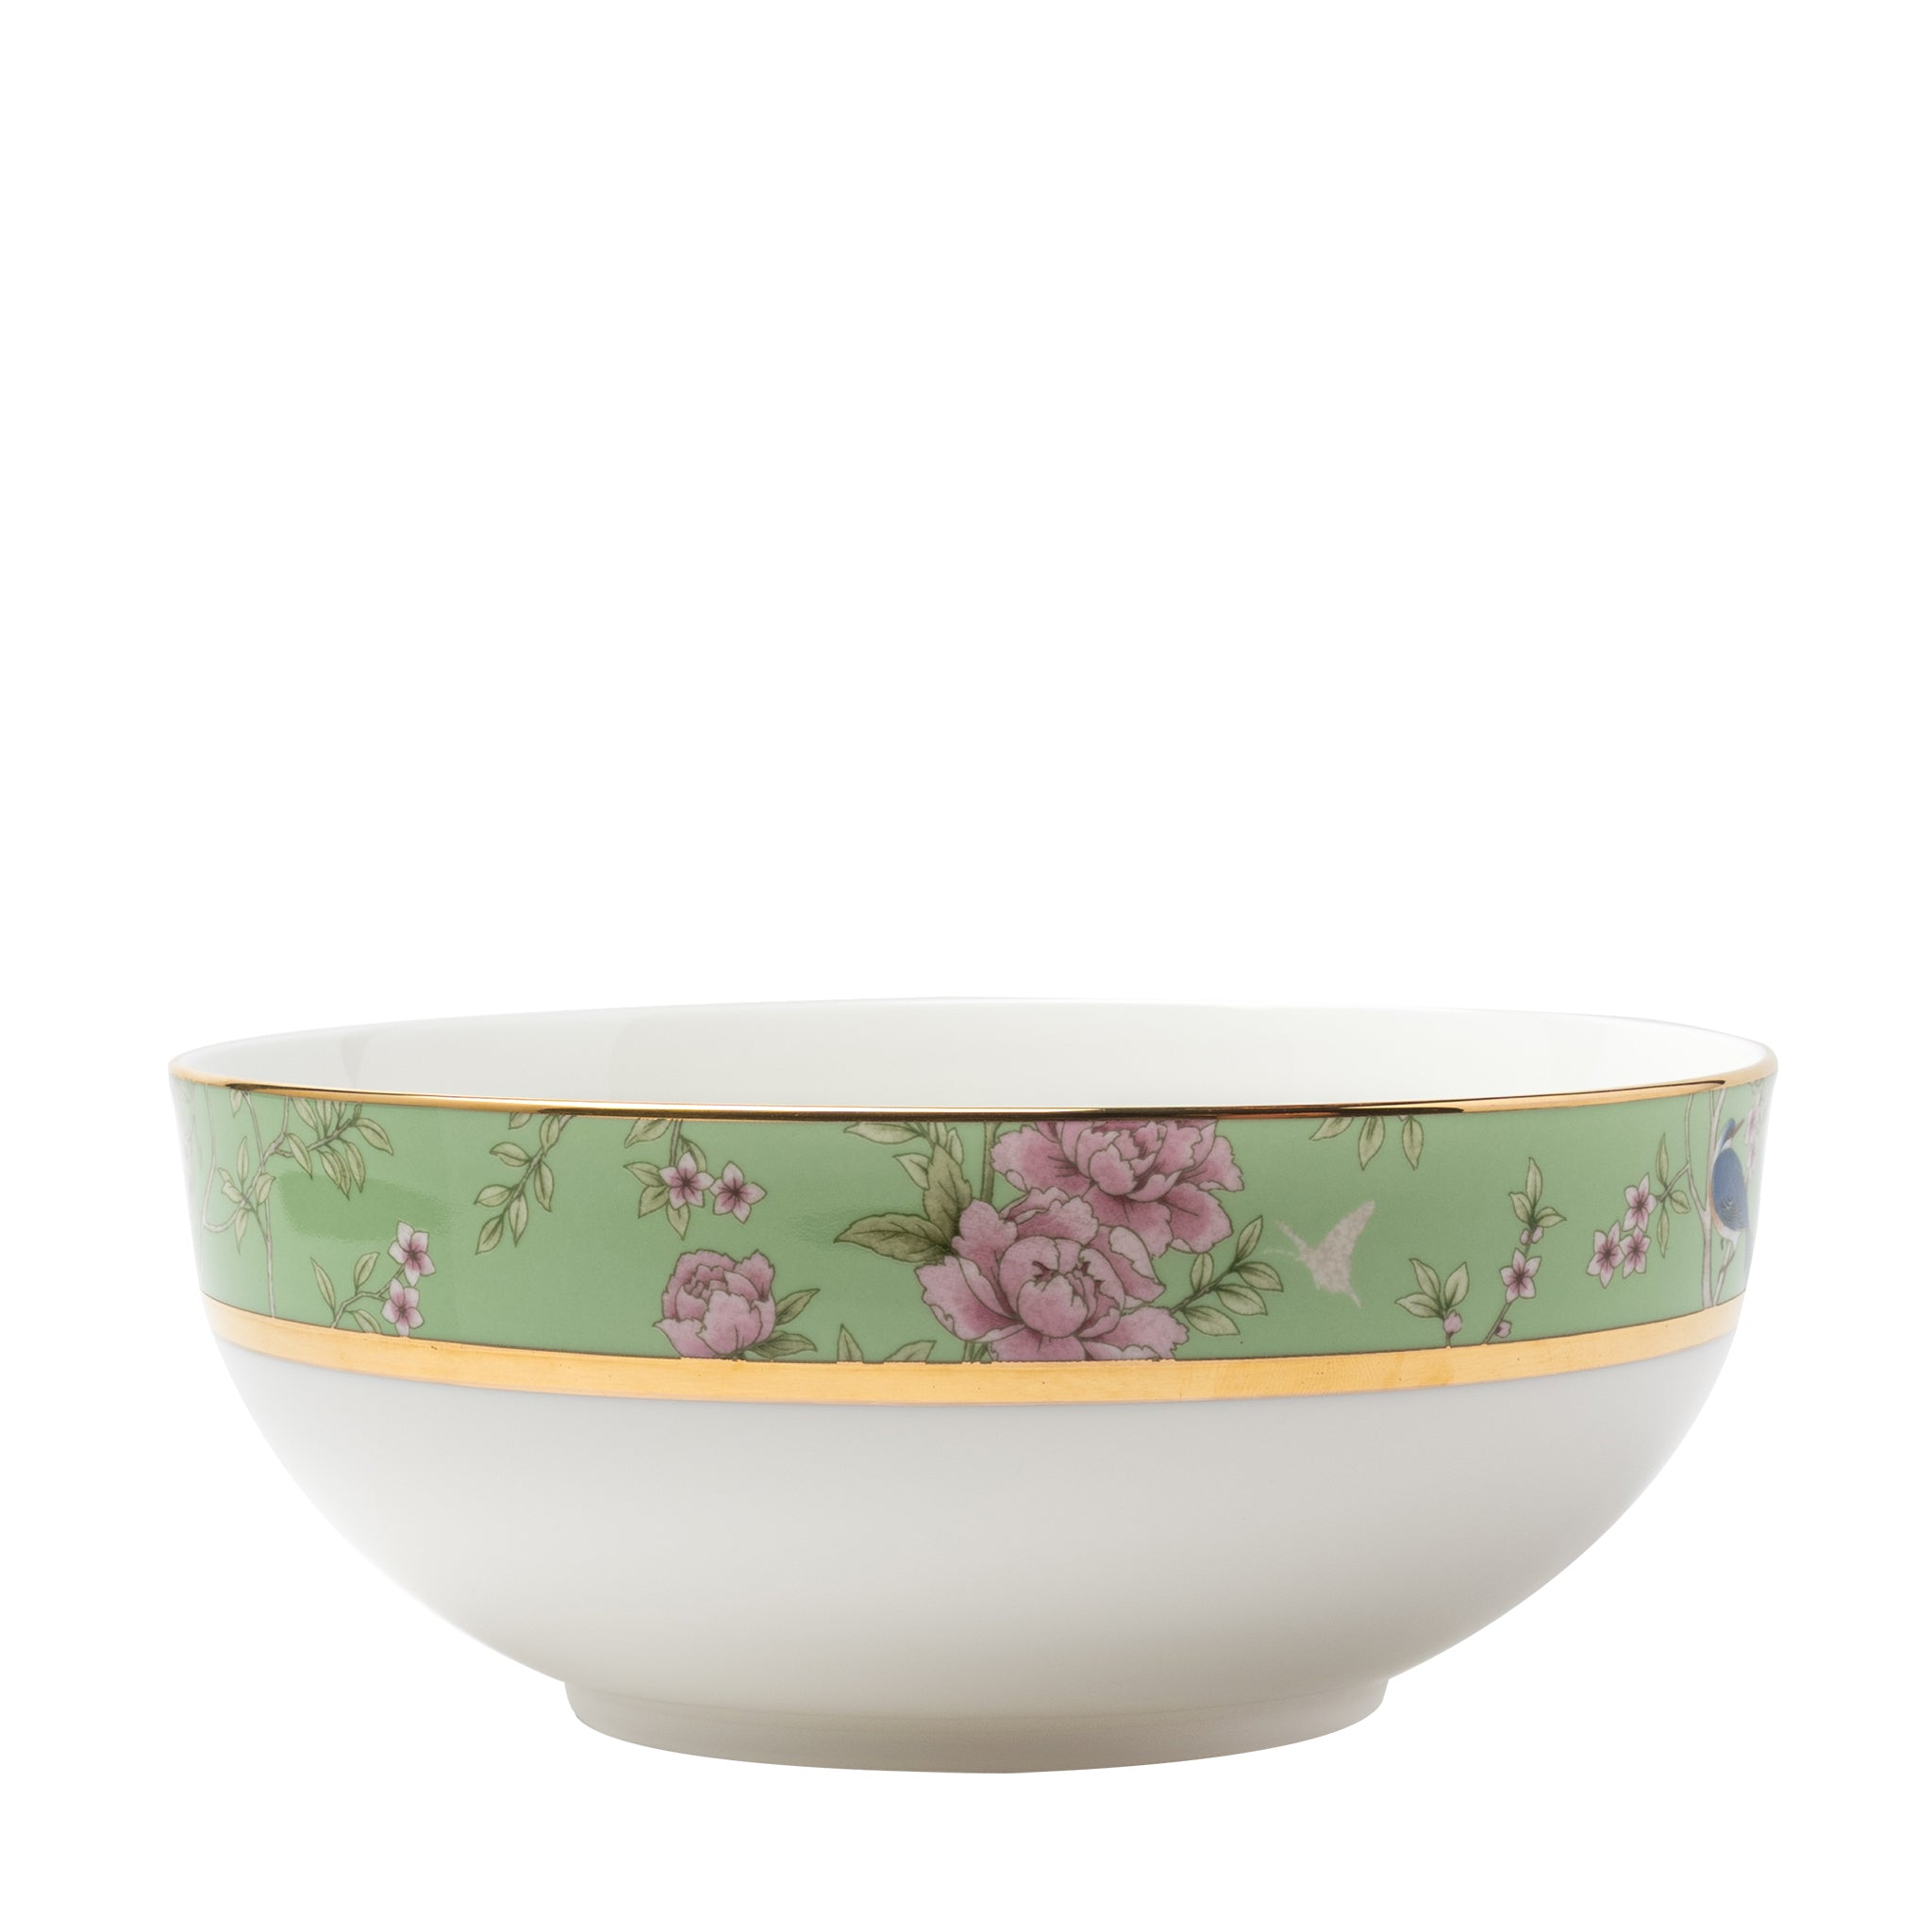 narumi queen's garden green 22cm bowl bowls 